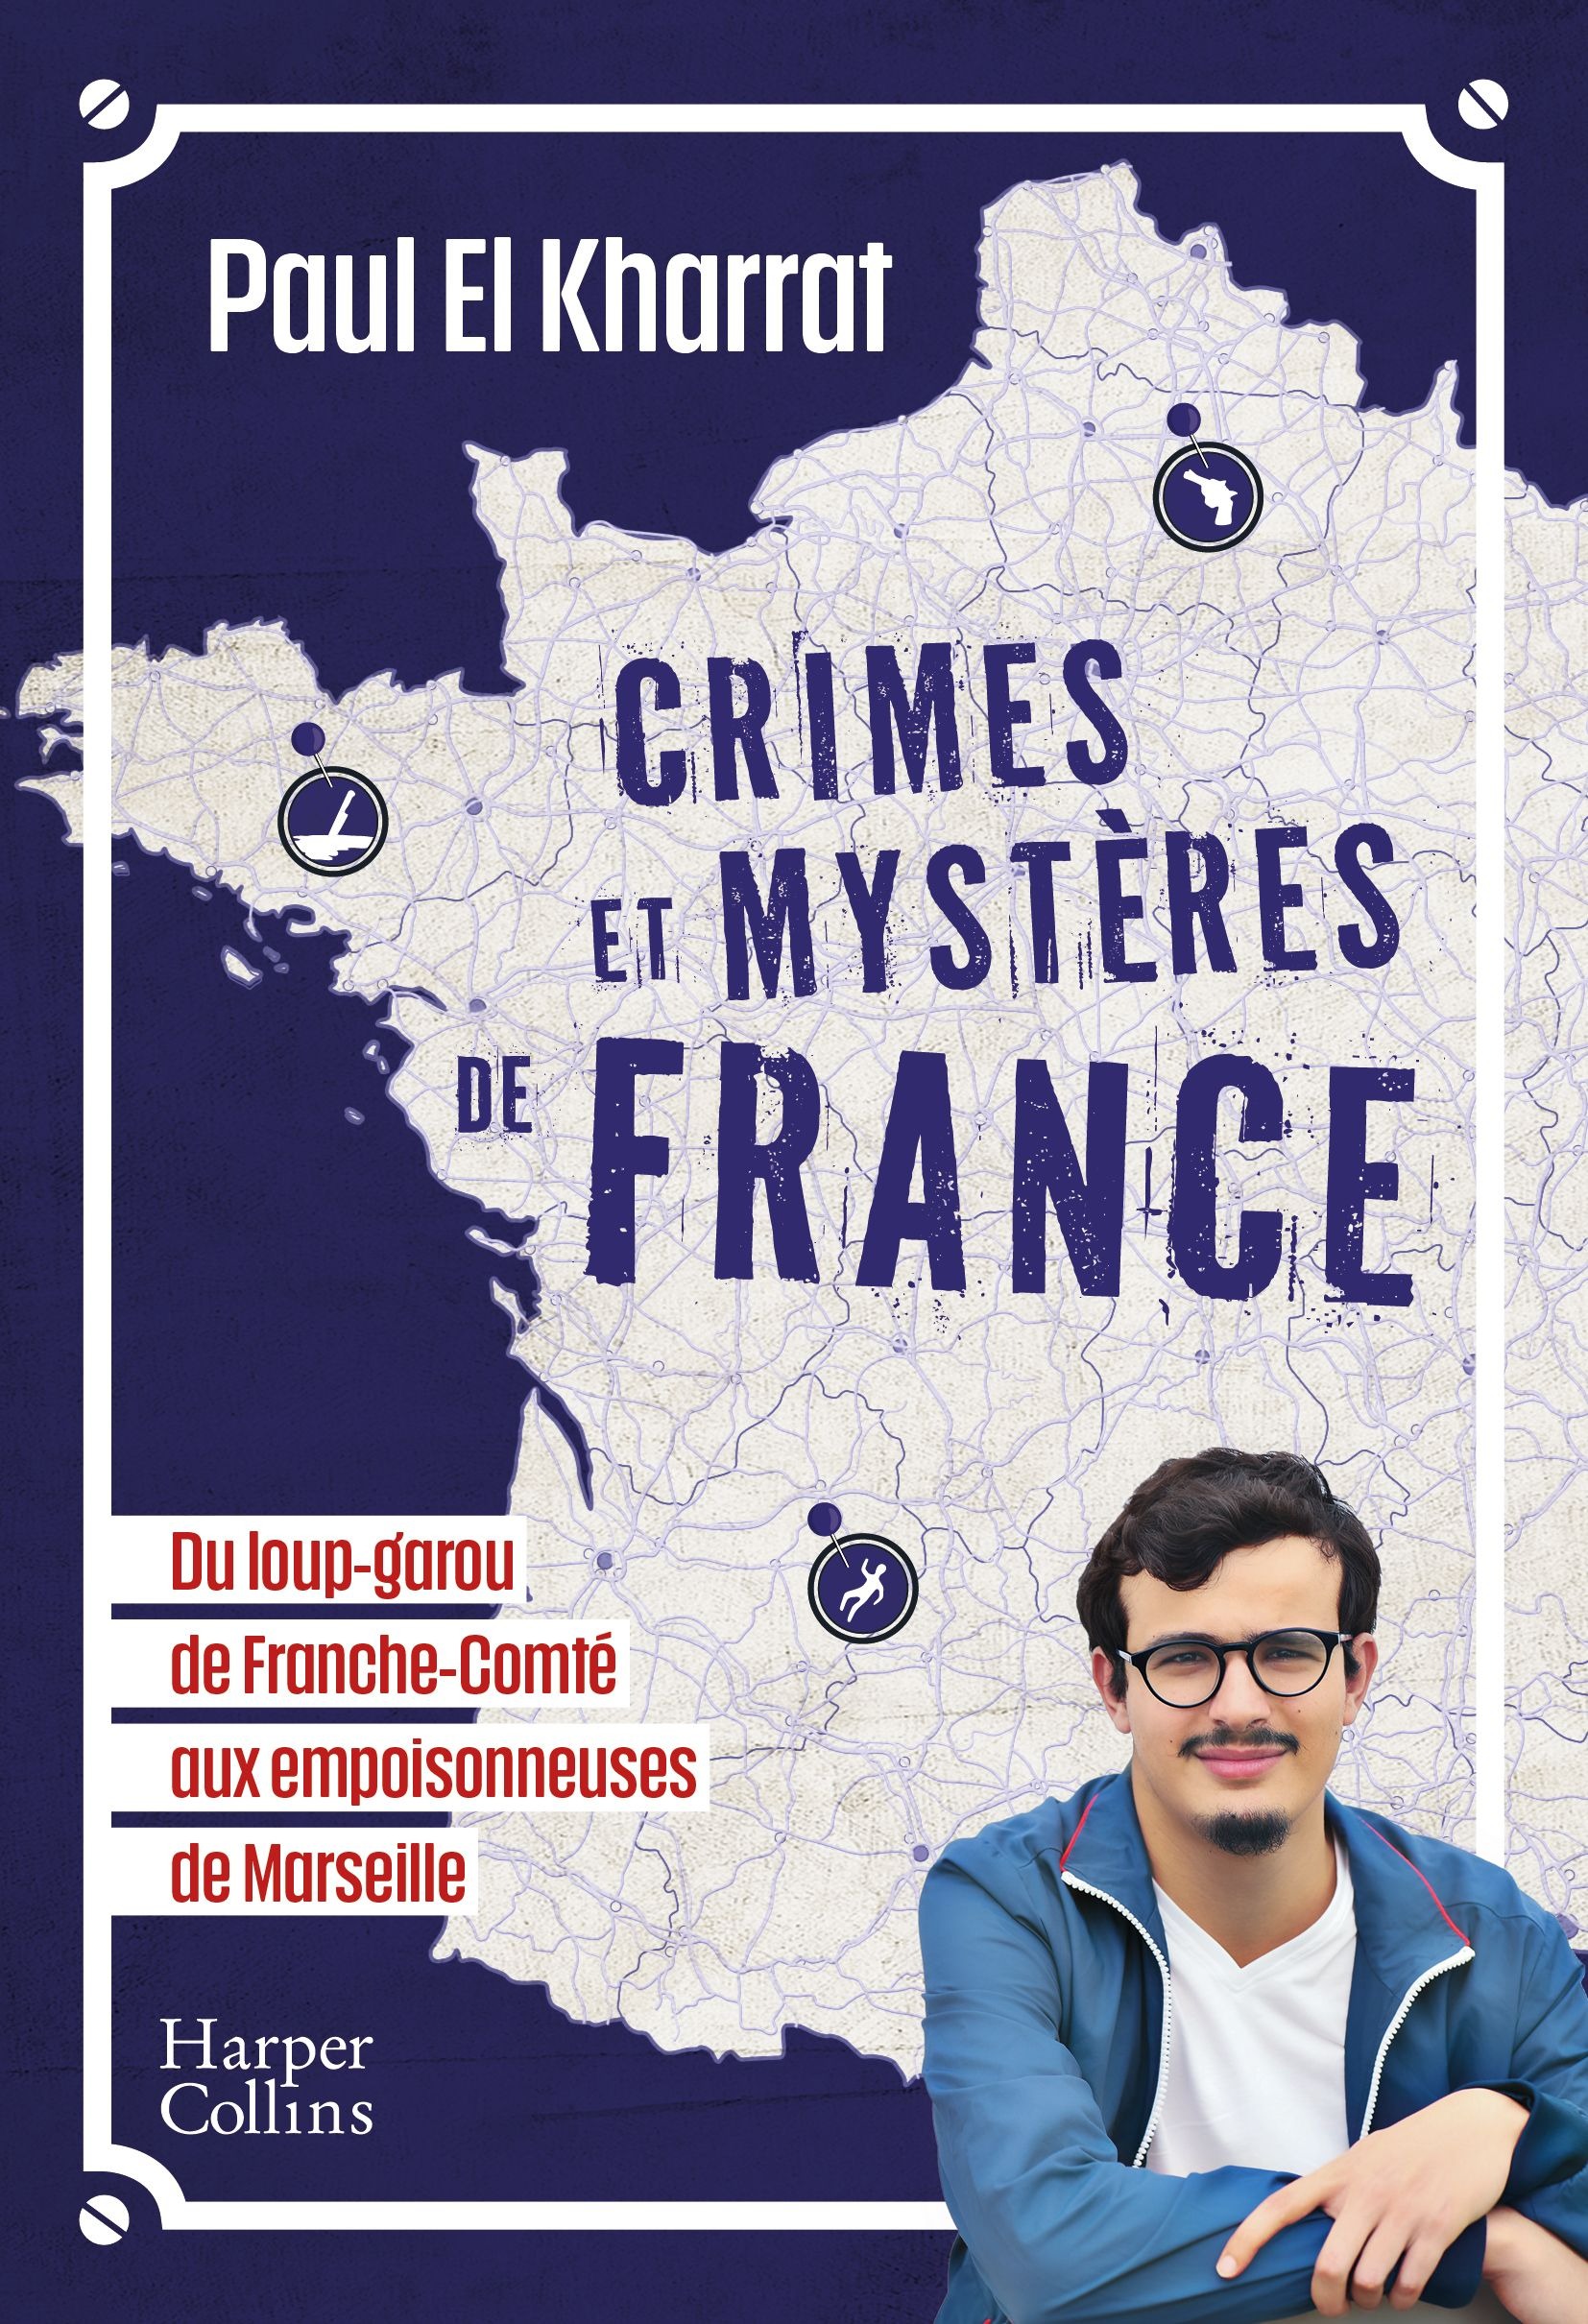 Paul El Kharrat dévoile les mystères criminels de la France dans son nouveau livre